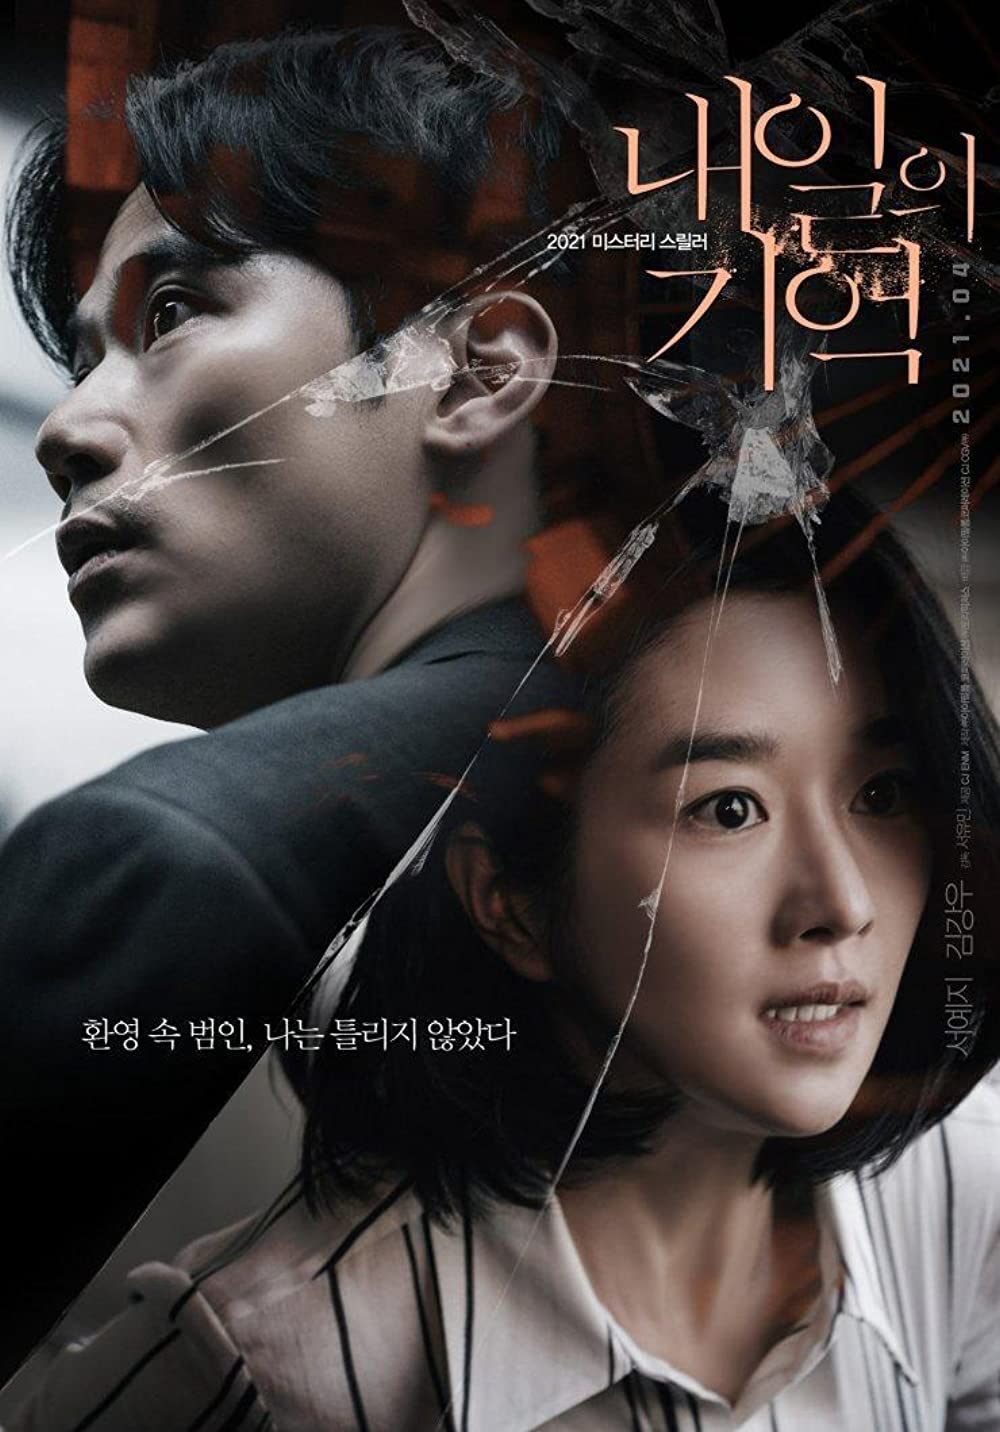 11 Film Korea action terbaik, Recalled penuh teka-teki menegangkan